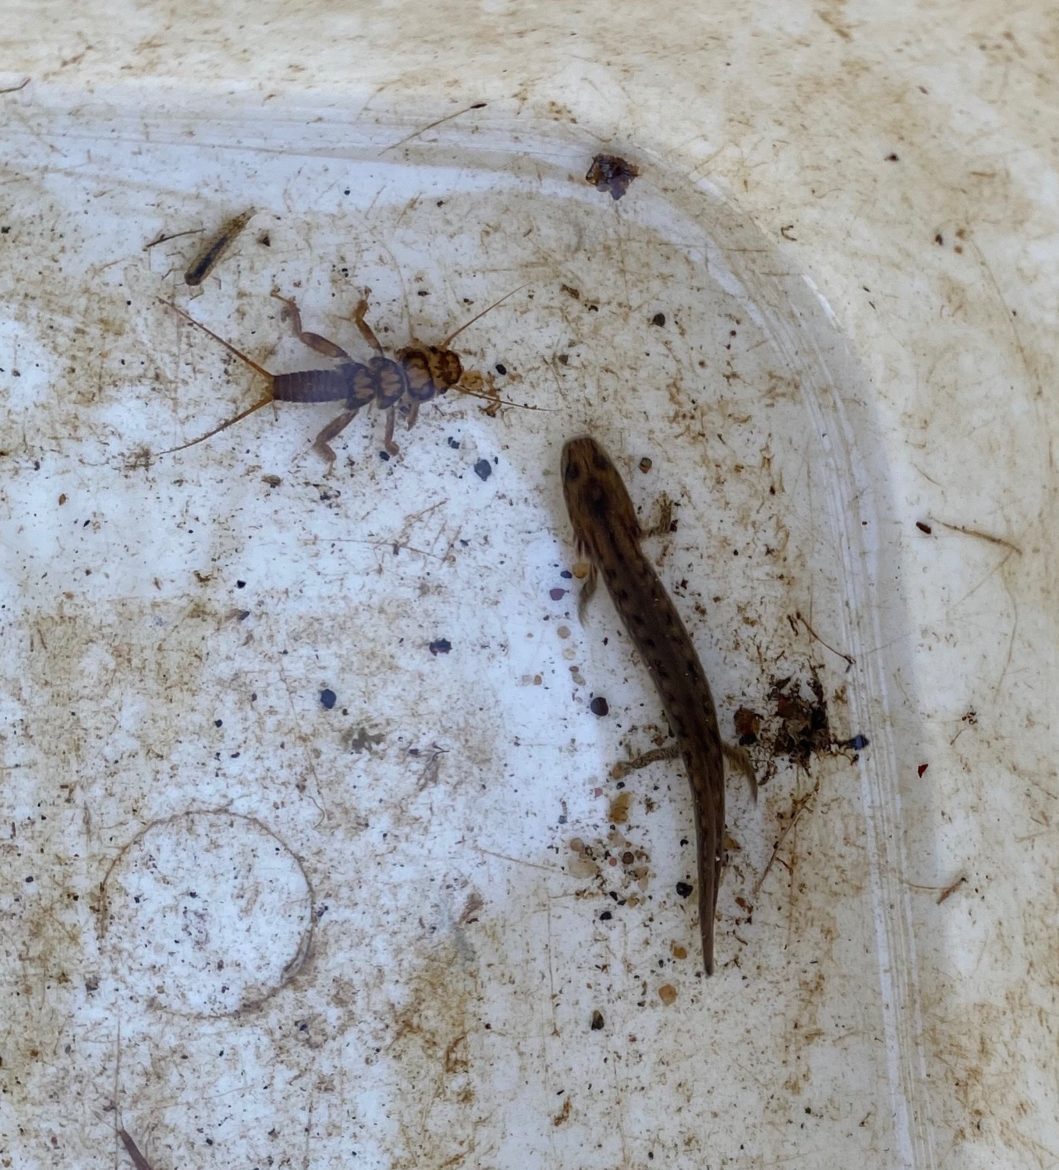 A stonefly larva and a salamander